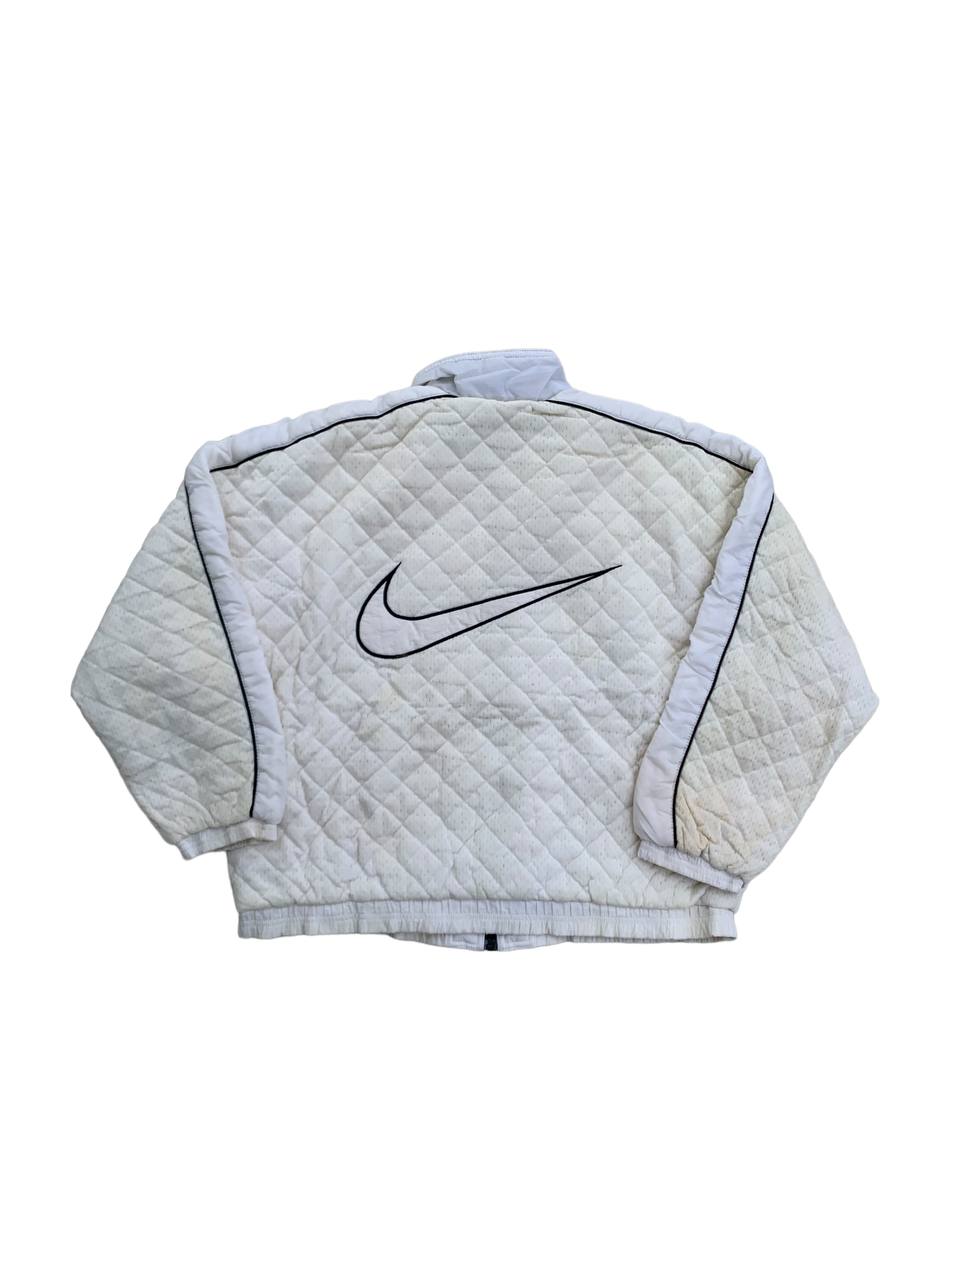 Vintage Nike Swoosh Primaloft Quilted Baggy Jacket - 2